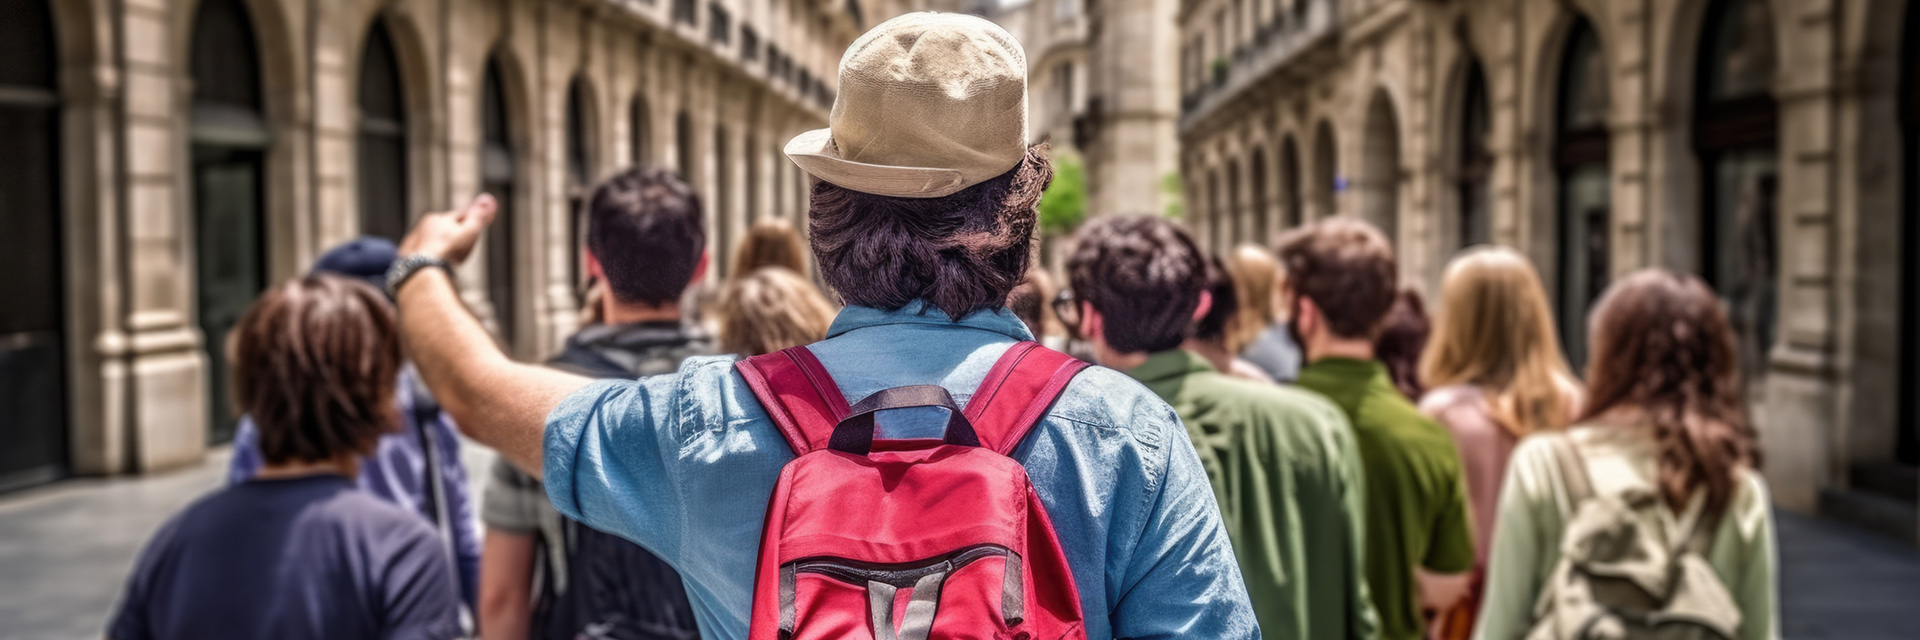 Séjour touristique en groupe : où partir en vacances en France ?